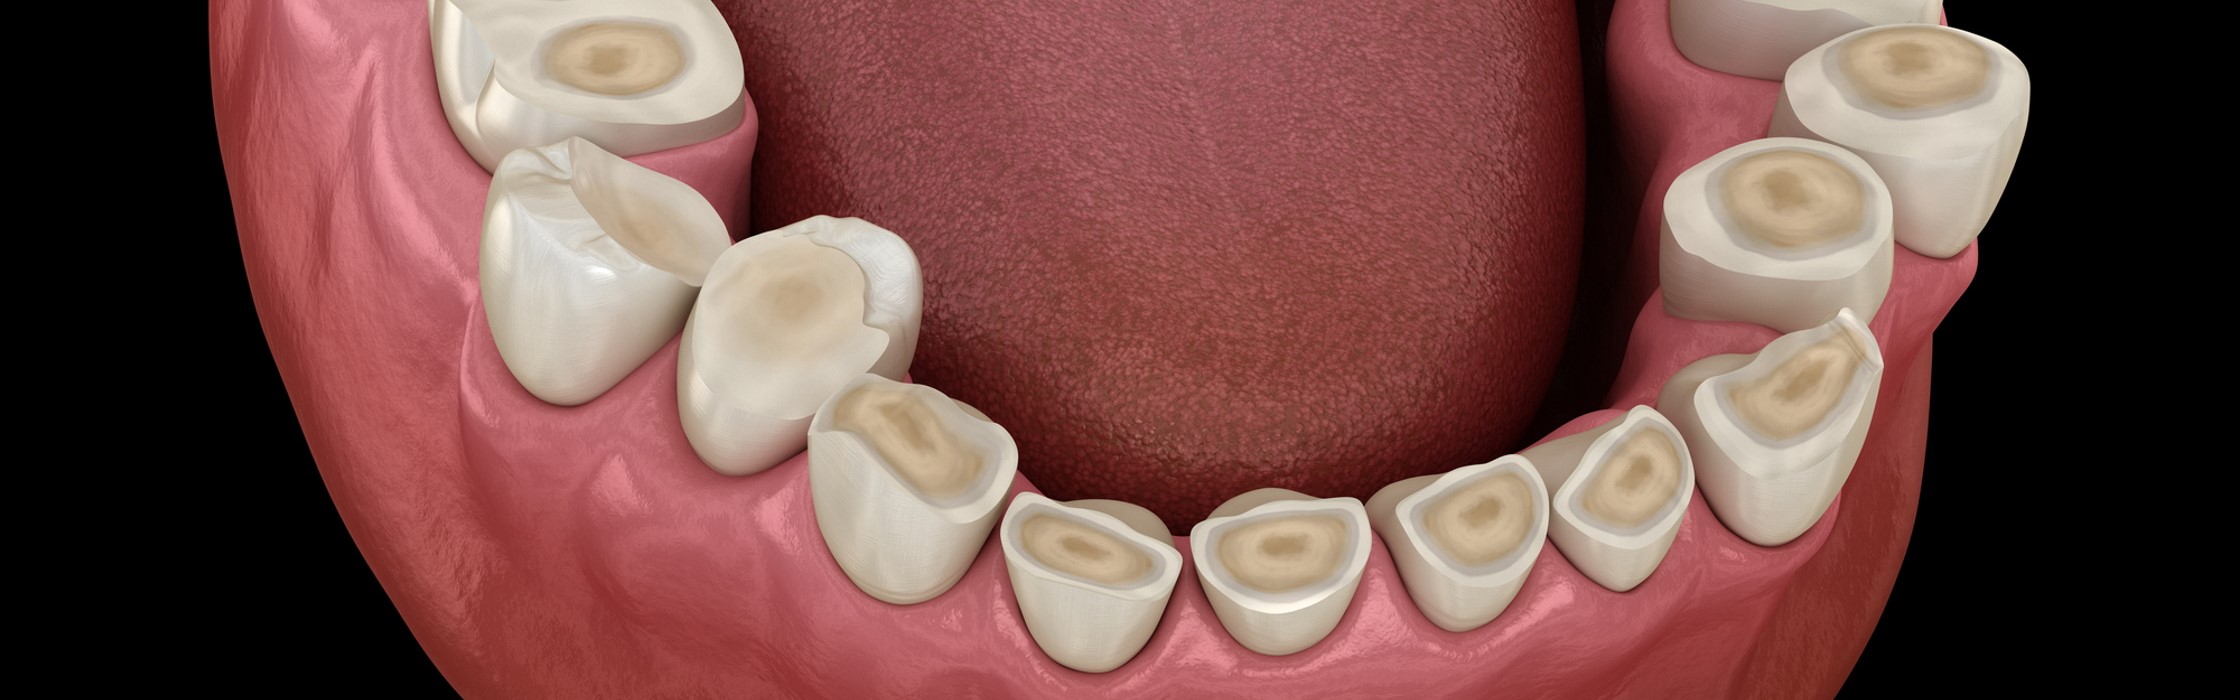 Bruxismus: Folgen von nächtlichem Zähneknirschen